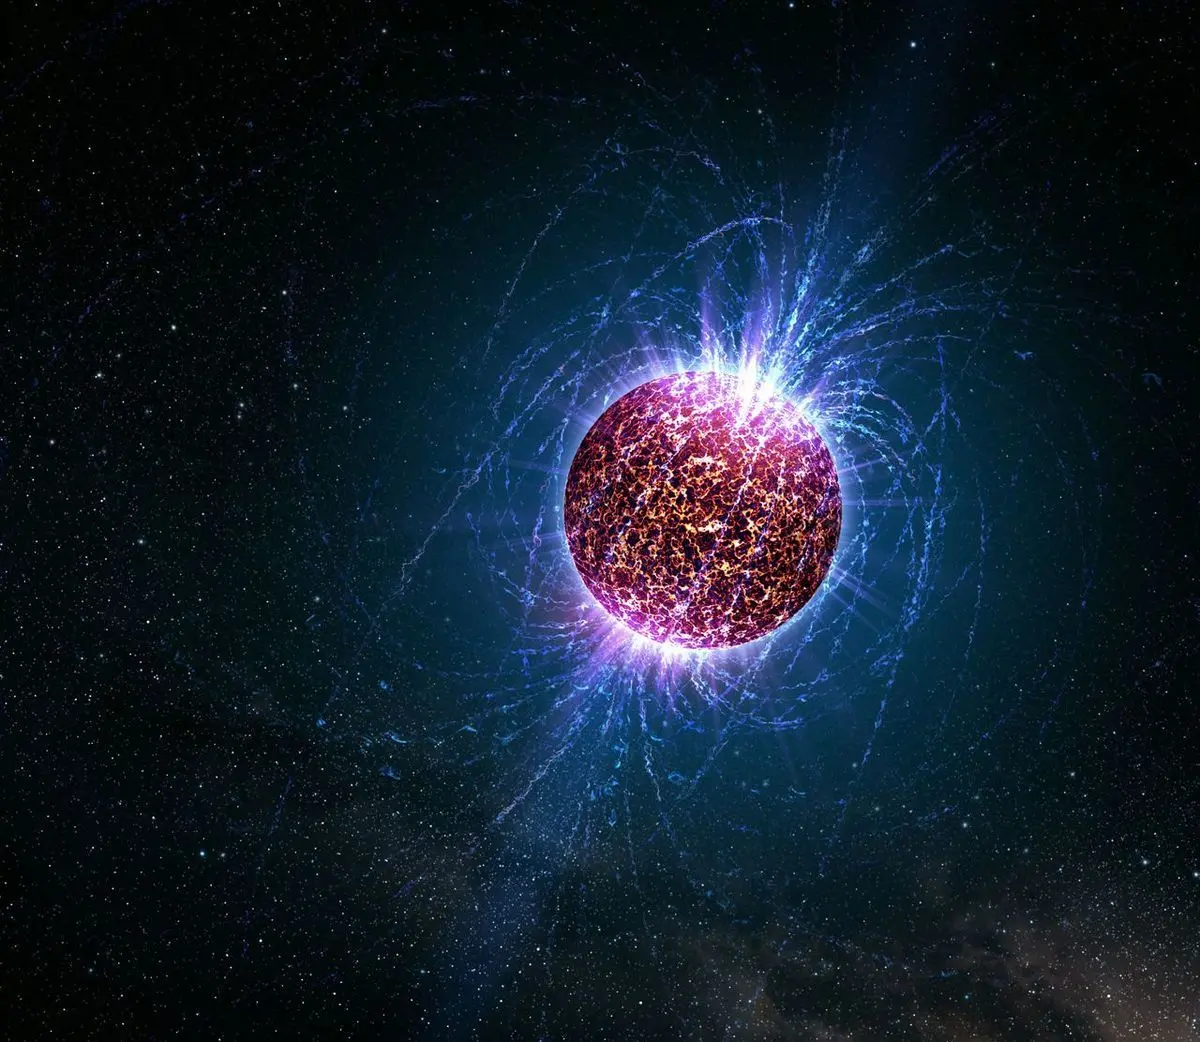 انفجار قوی کهکشانی با سوخت ۲۰ میلیون تریلیون کیلوگرم ماده 